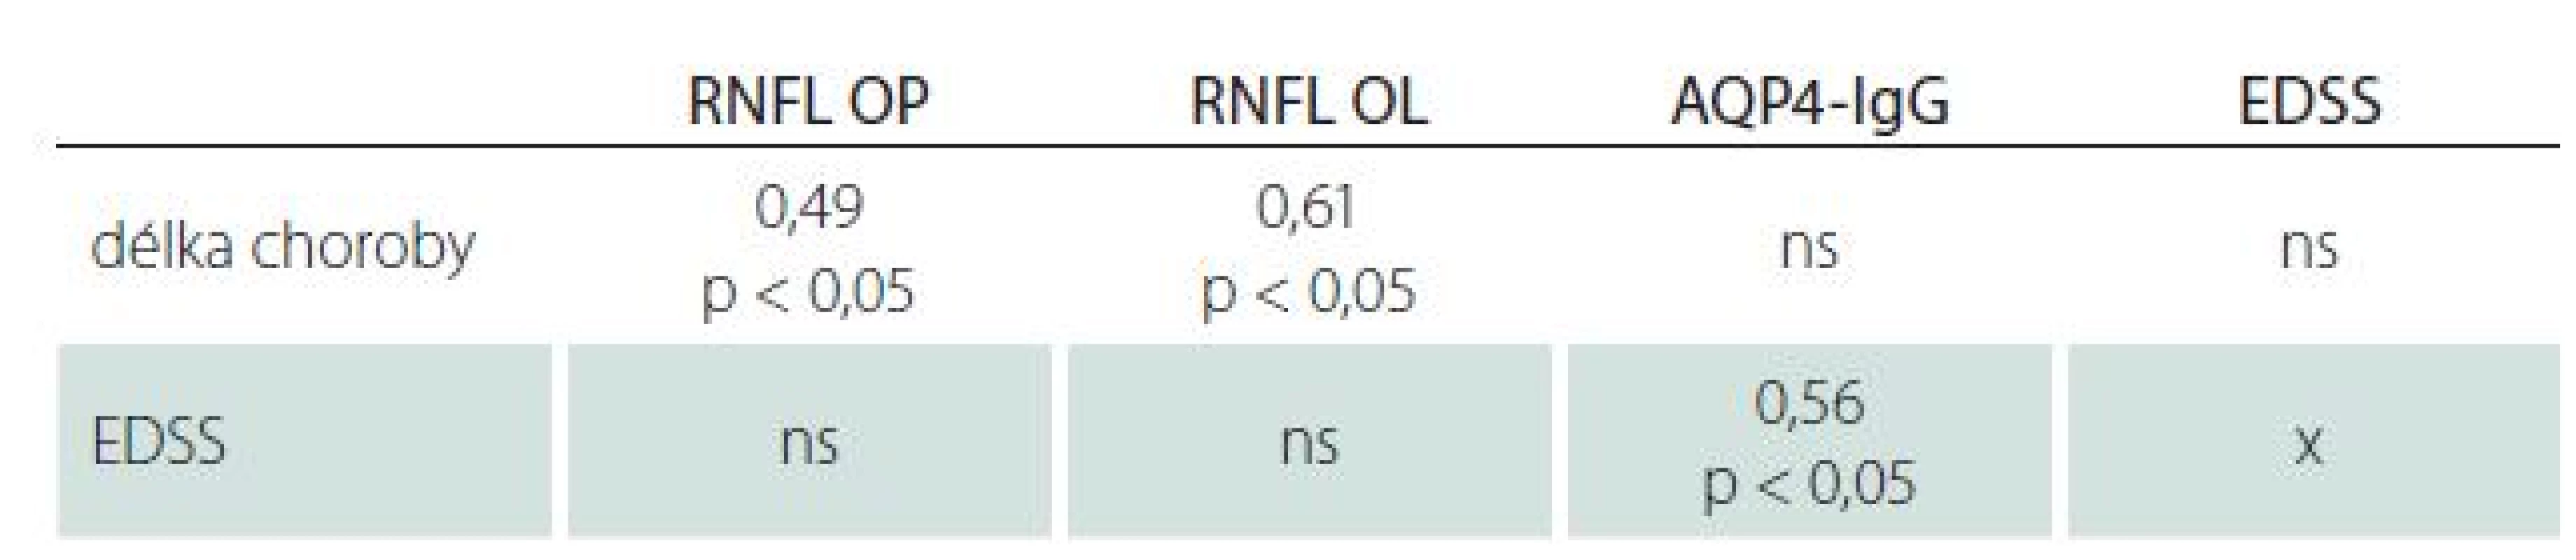 Spearmanův korelační koeficient mezi RNFL, titry AQP4-IgG, EDSS a délkou choroby.